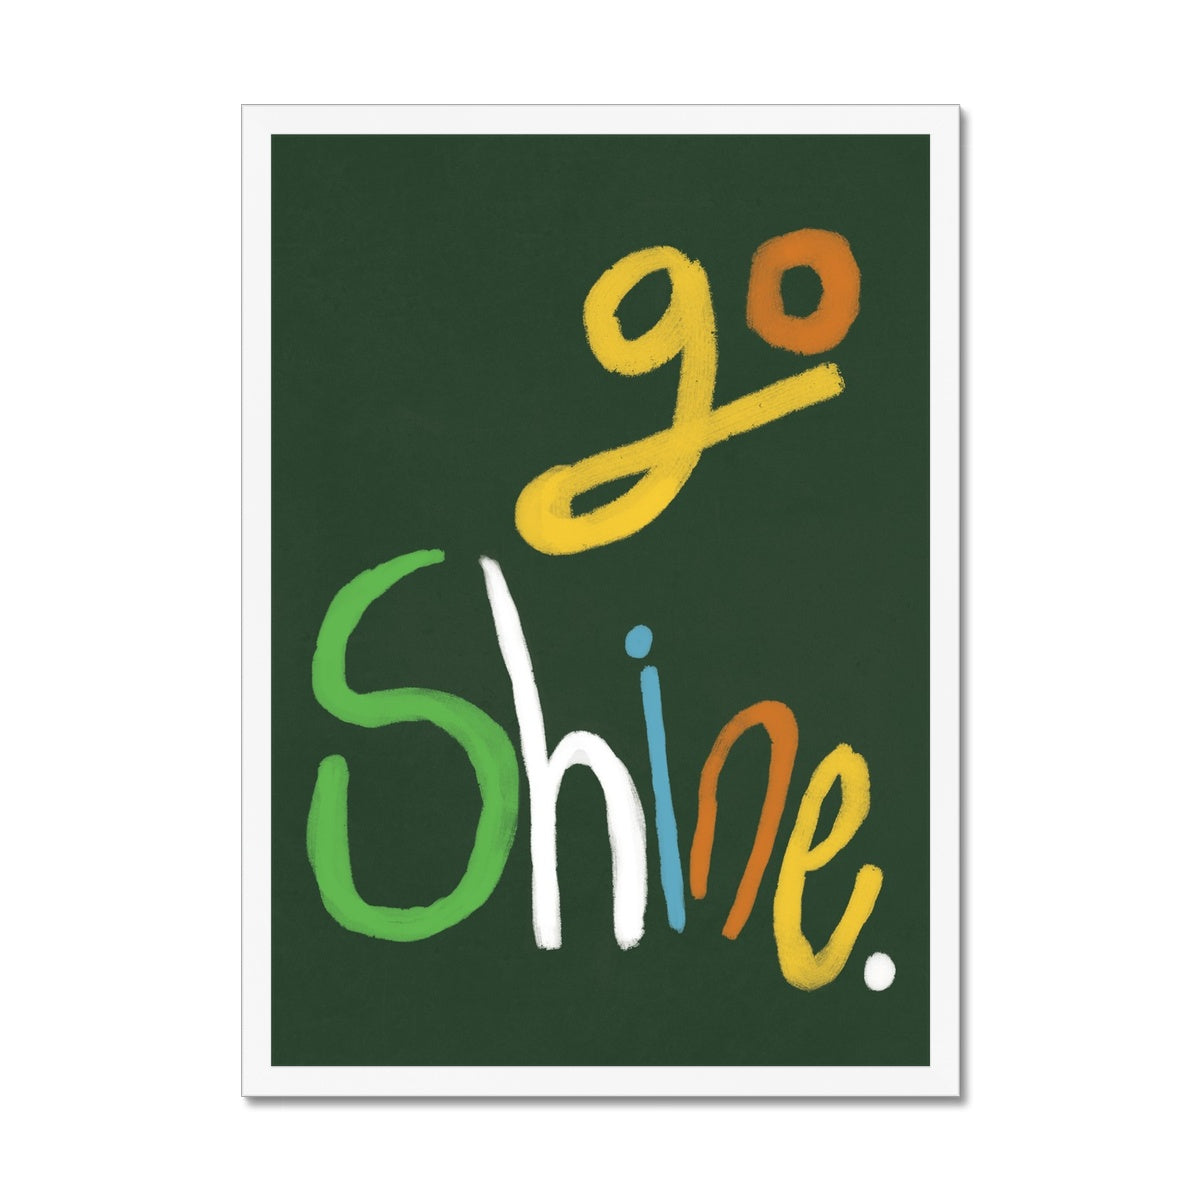 Go Shine Art Print - Green, Multi-coloured Framed Print